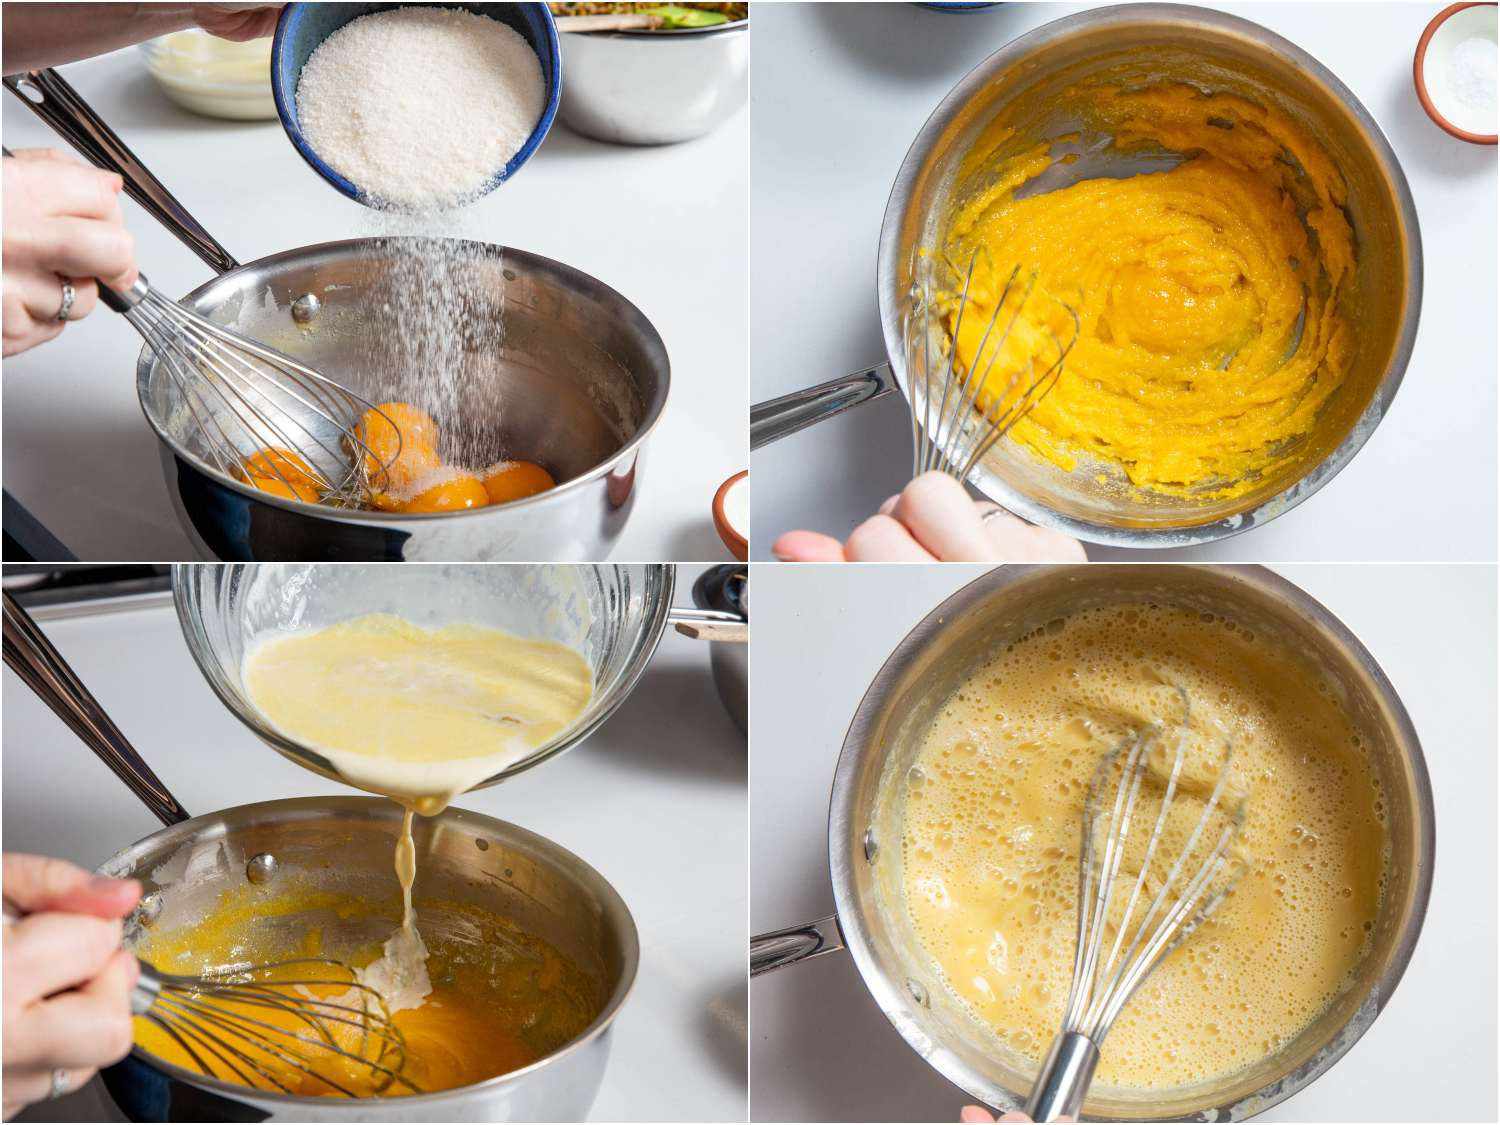 把烤好的白砂糖搅拌到蛋黄里，然后把开心果牛奶加入混合物中，做成冰淇淋的蛋奶沙司。gydF4y2Ba